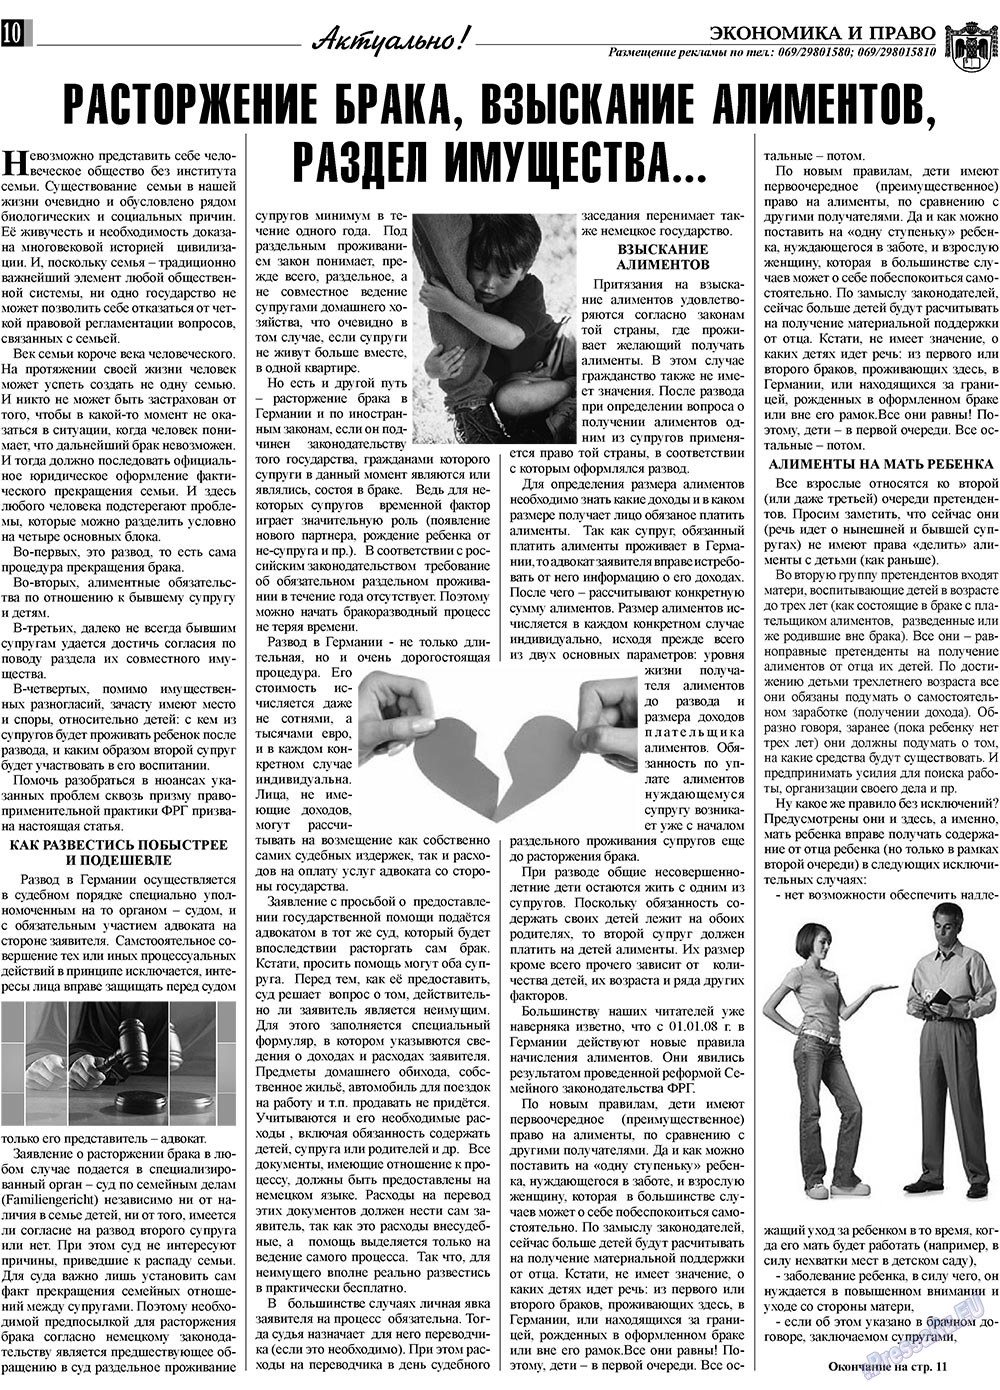 Экономика и право, газета. 2009 №2 стр.10